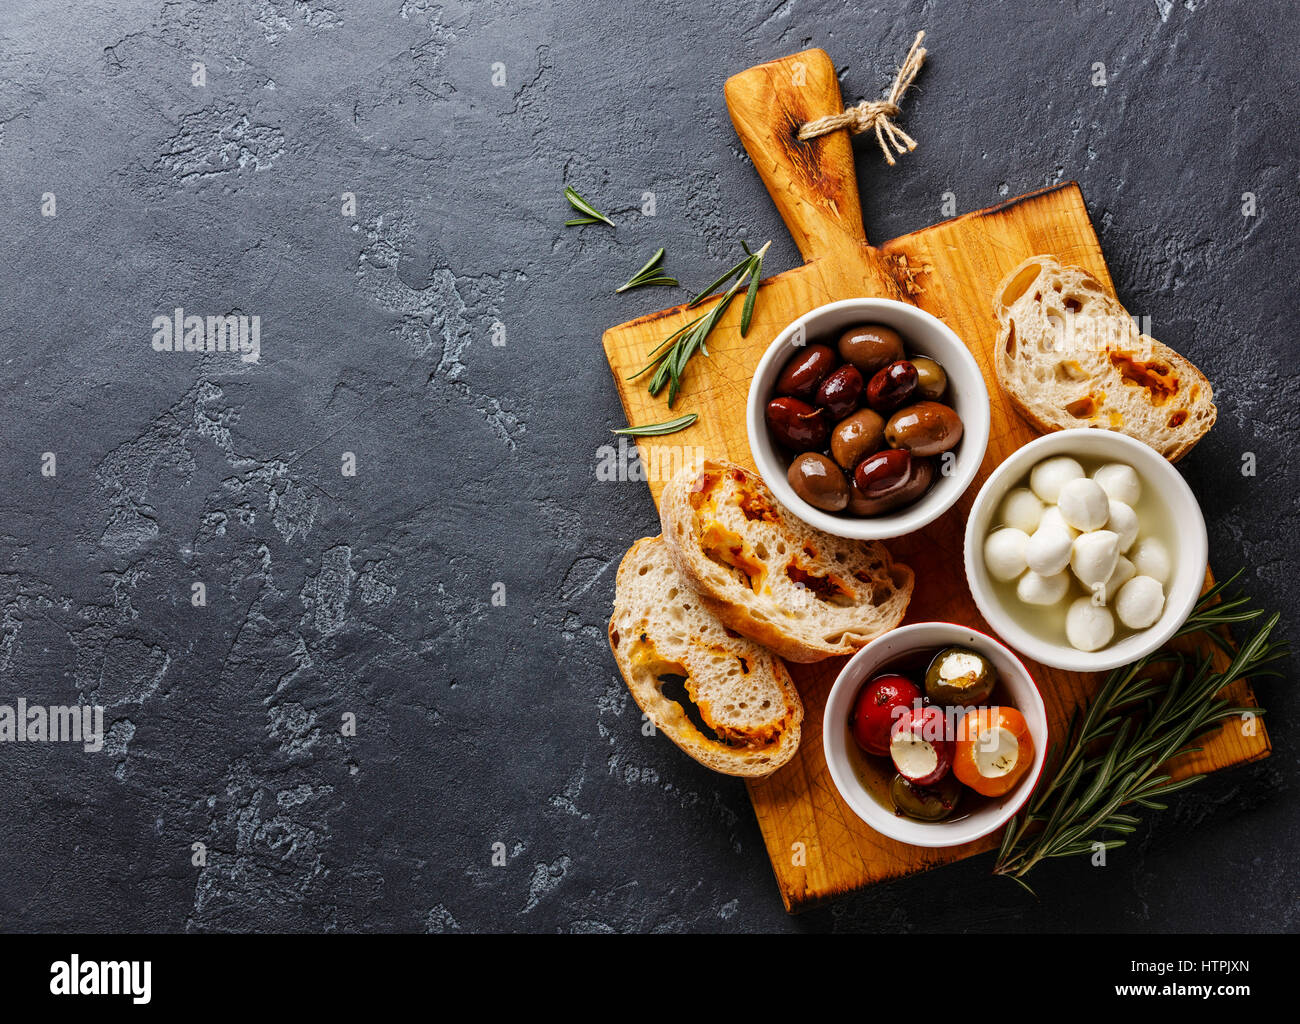 Les olives, les poivrons farcis, mini-mozzarella et tranches de pain ciabatta sur fond sombre copy space Banque D'Images